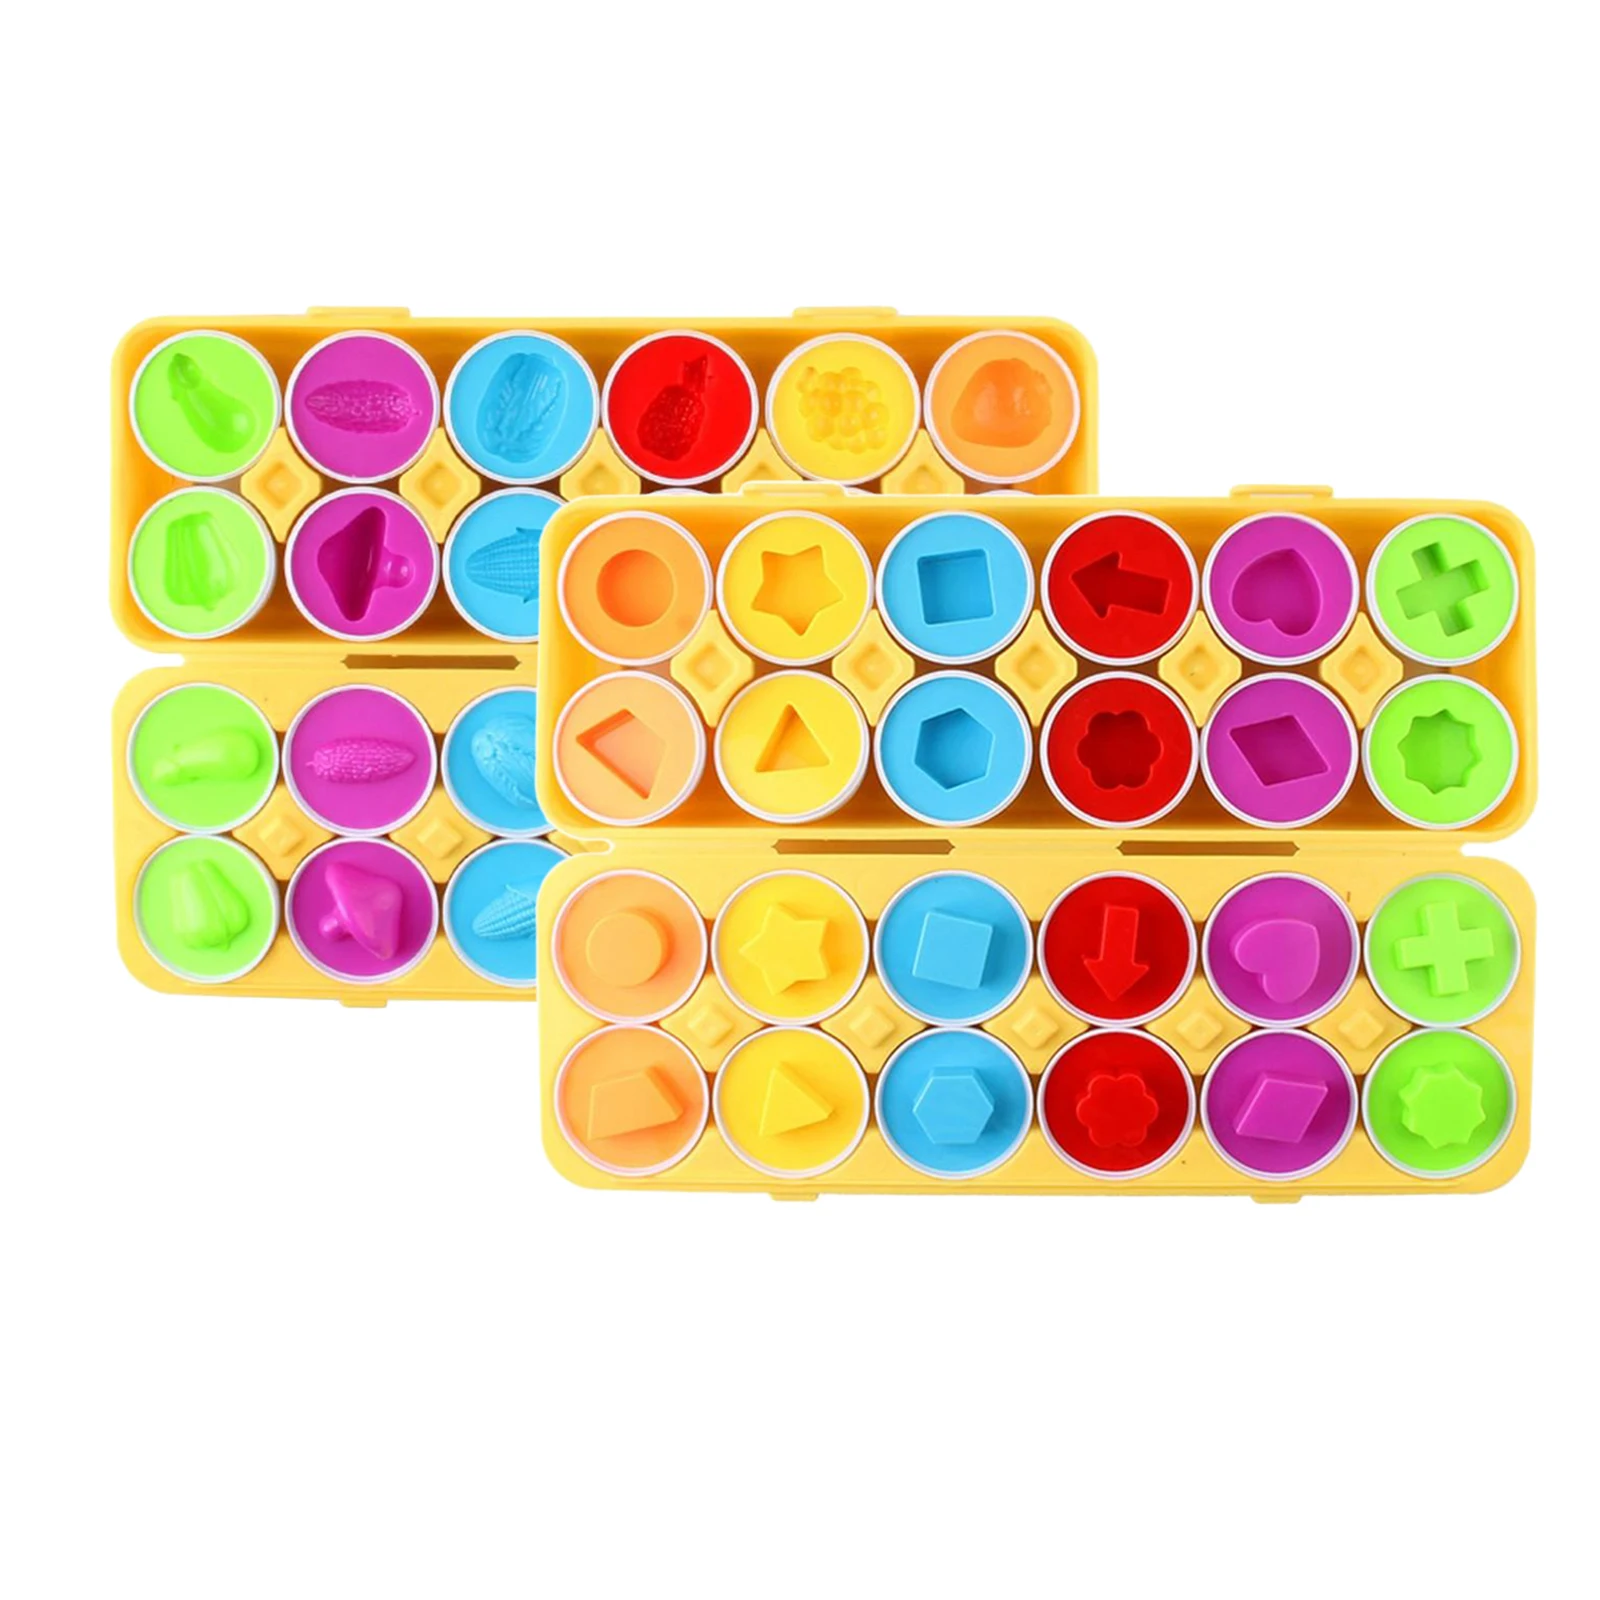 Фото 12 шт./компл. одинаковая в форме яйца для сортировки и Цвет Recoginition игрушки | Игрушки